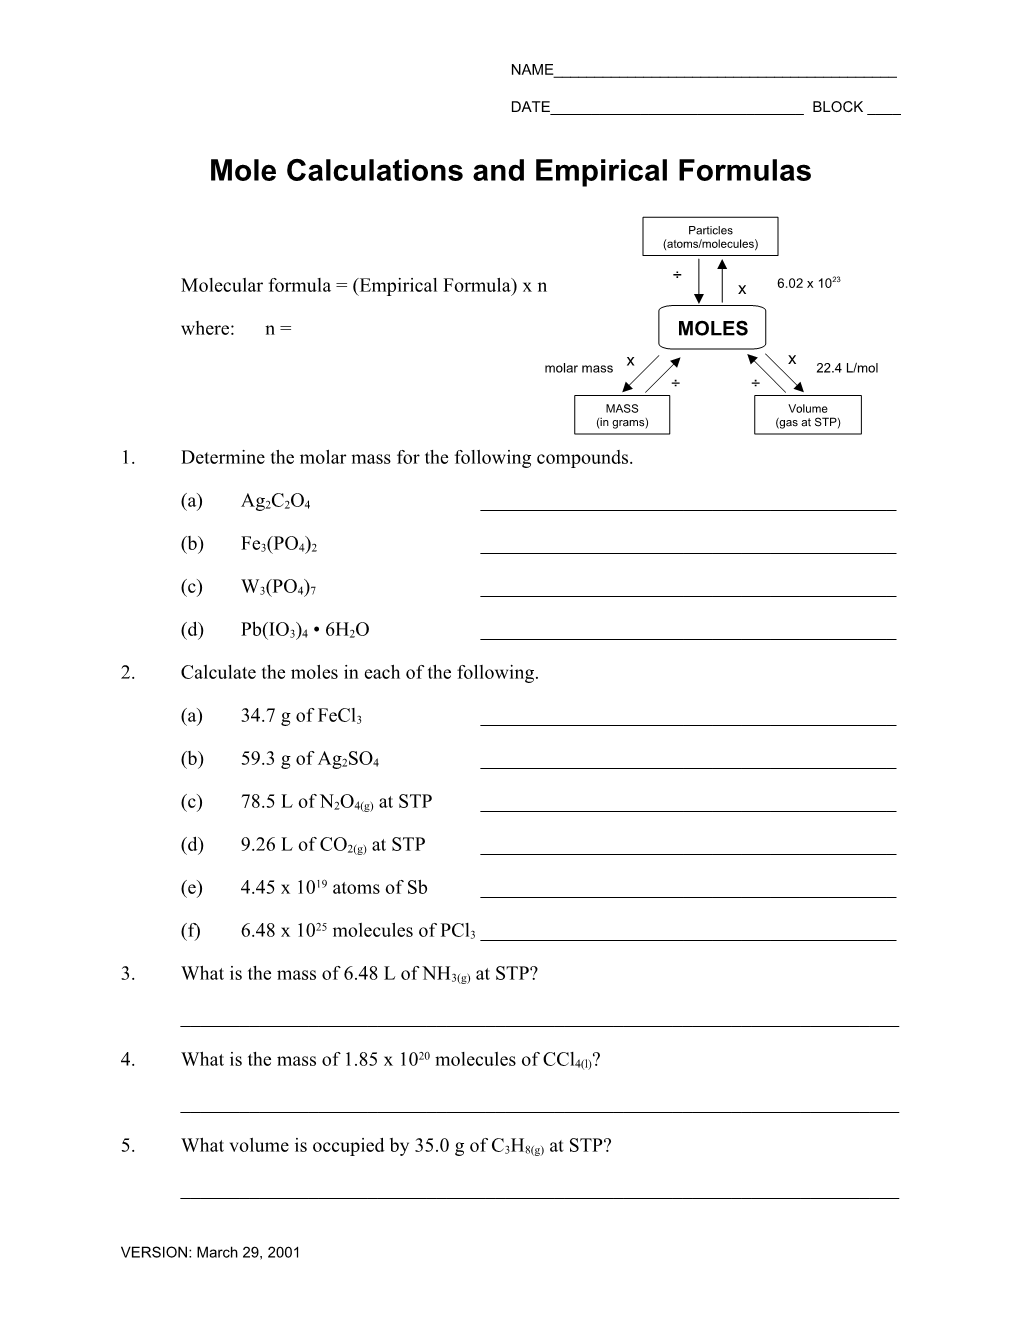 Mole Calculations and Empirical Formulas